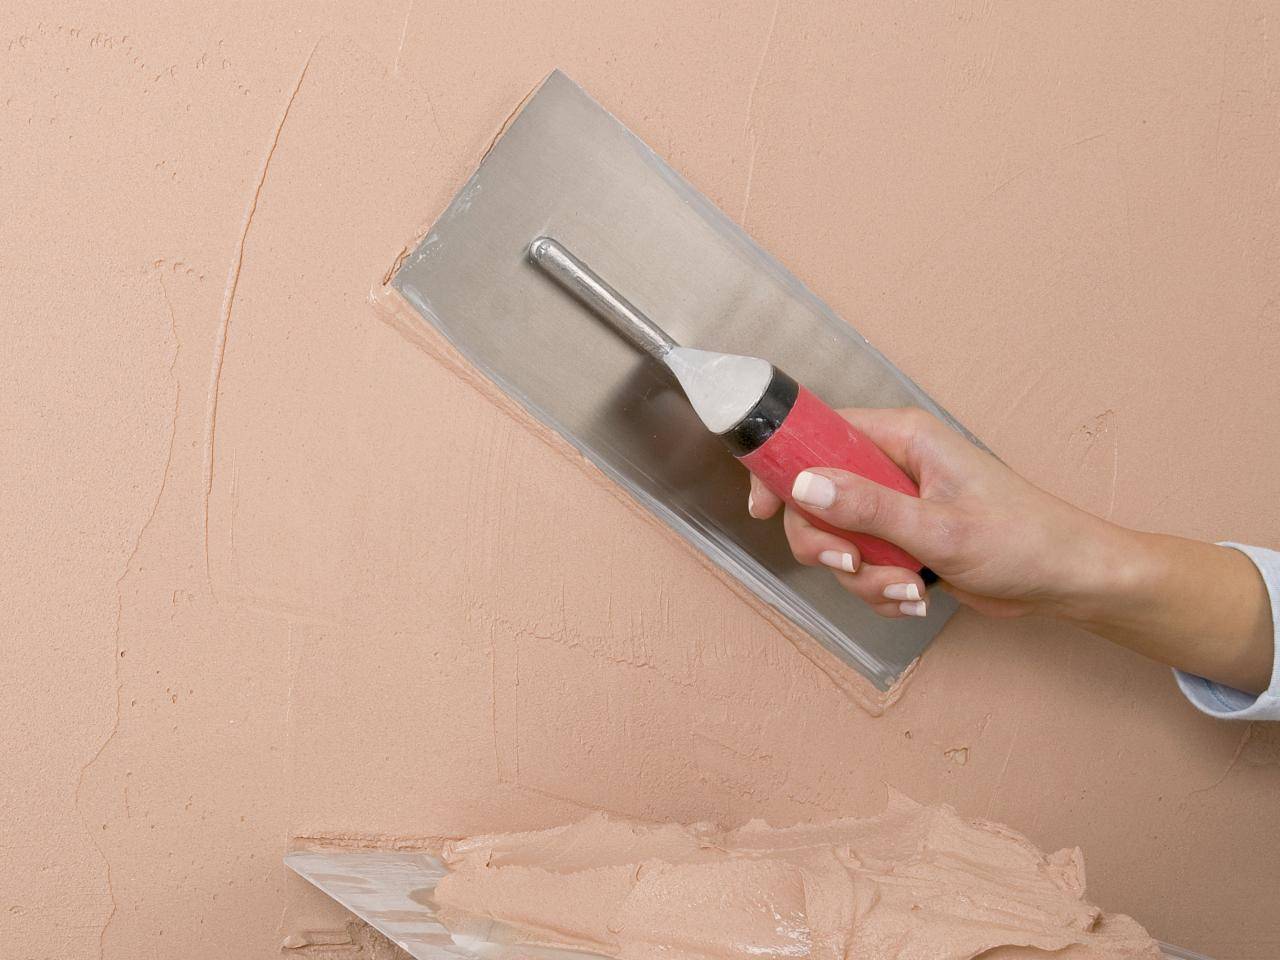 Декоративная штукатурка на гипсокартон: можно ли наносить на стены и потолок, как это делать своими руками, и инструменты для нанесения и правила отделки